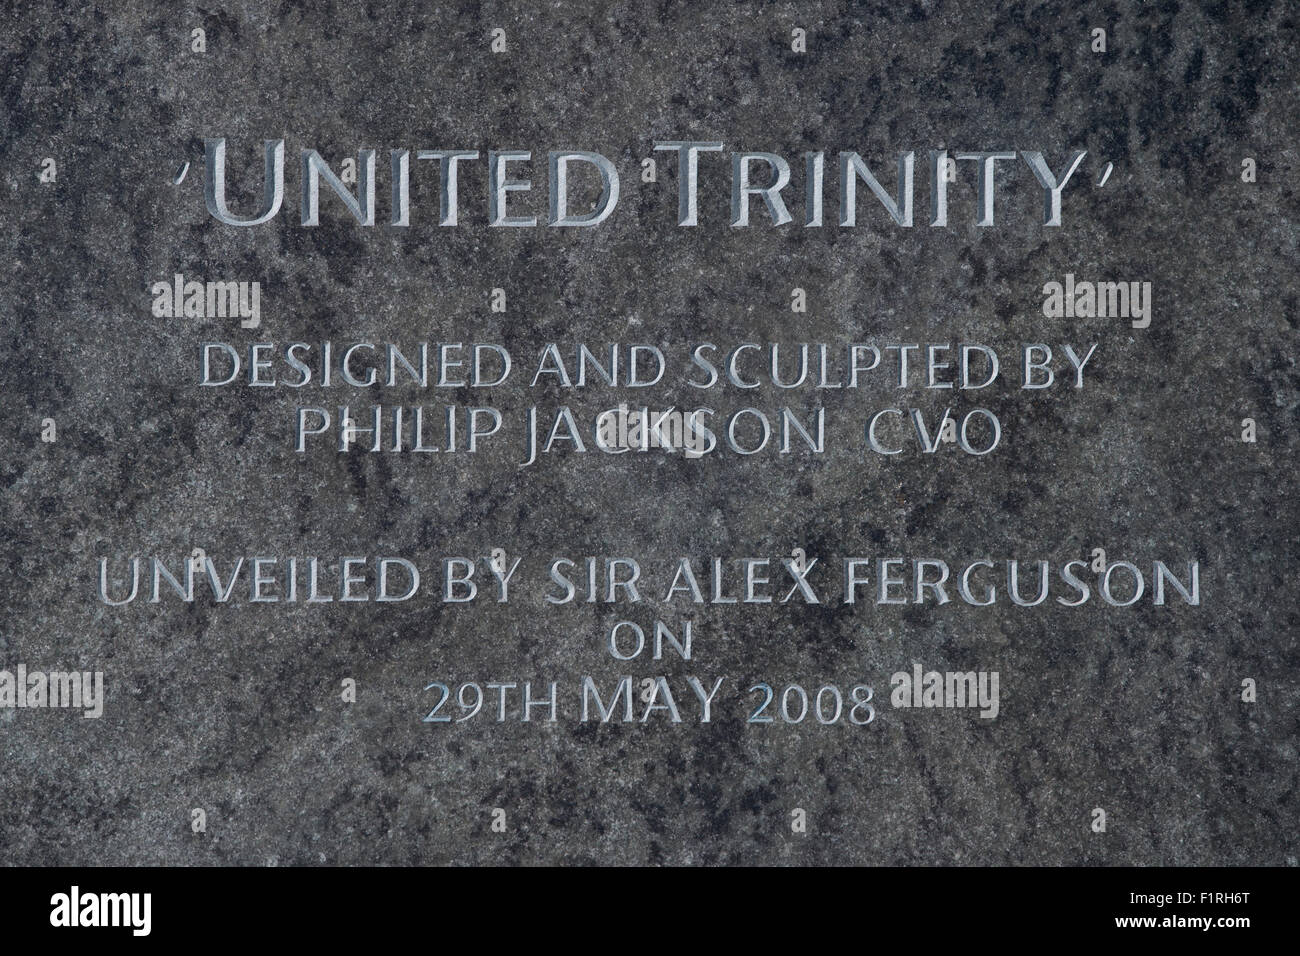 Die Plakette unter der Trinity United-Statue in der Nähe von Old Trafford Stadion, Heimat des Manchester United Football Club. Stockfoto